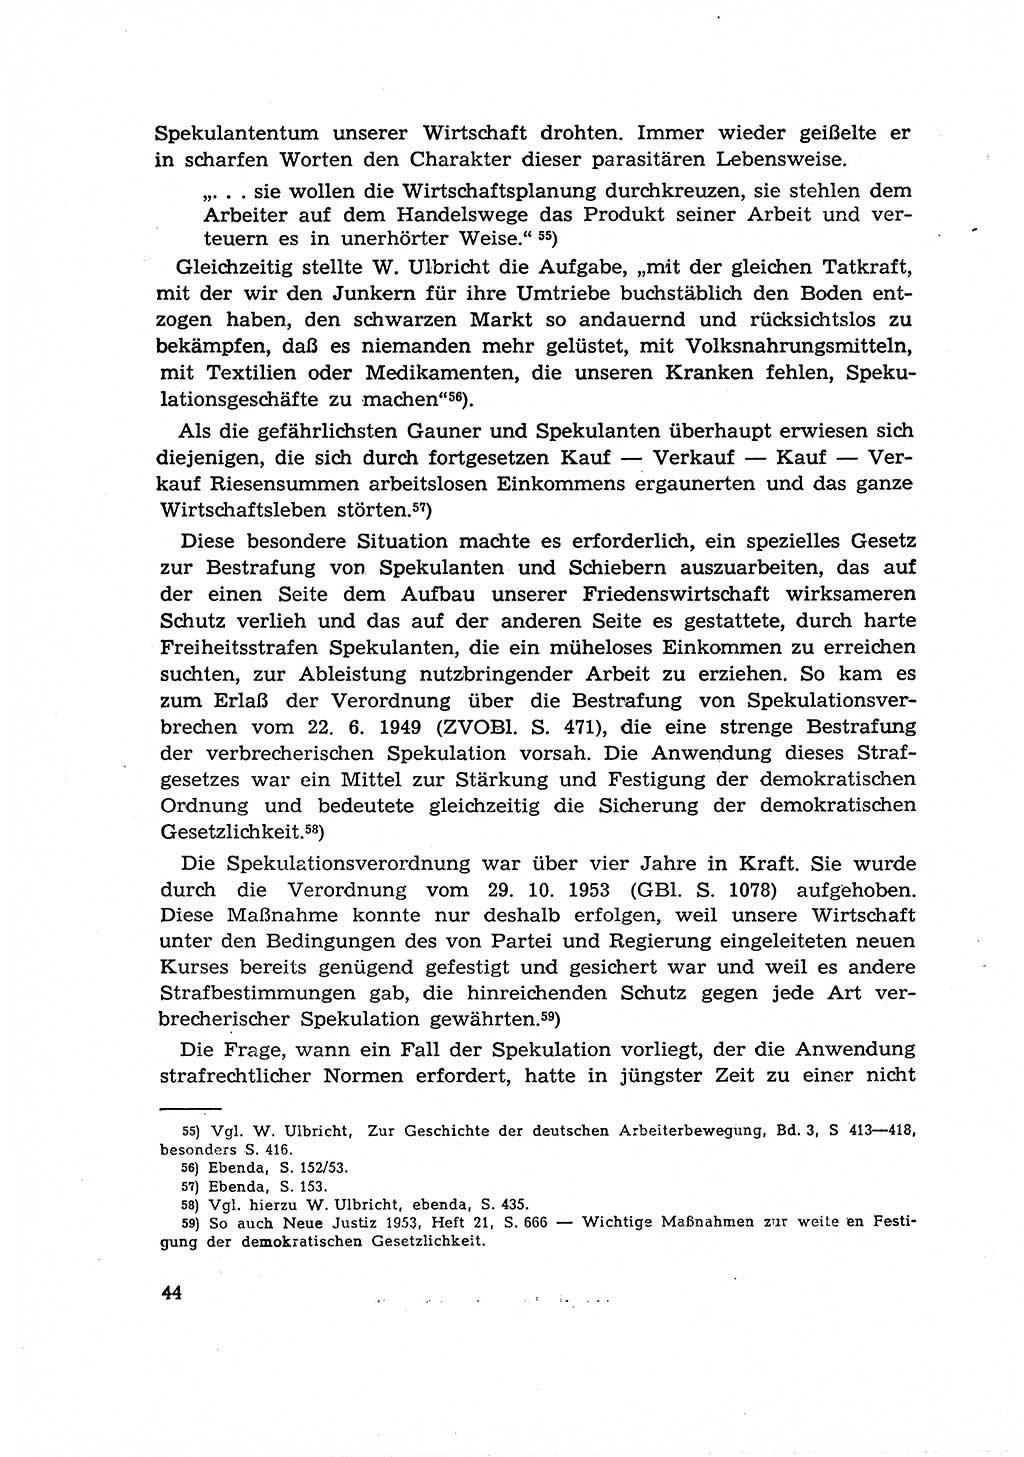 Materialien zum Strafrecht, Besonderer Teil [Deutsche Demokratische Republik (DDR)] 1955, Seite 44 (Mat. Strafr. BT DDR 1955, S. 44)